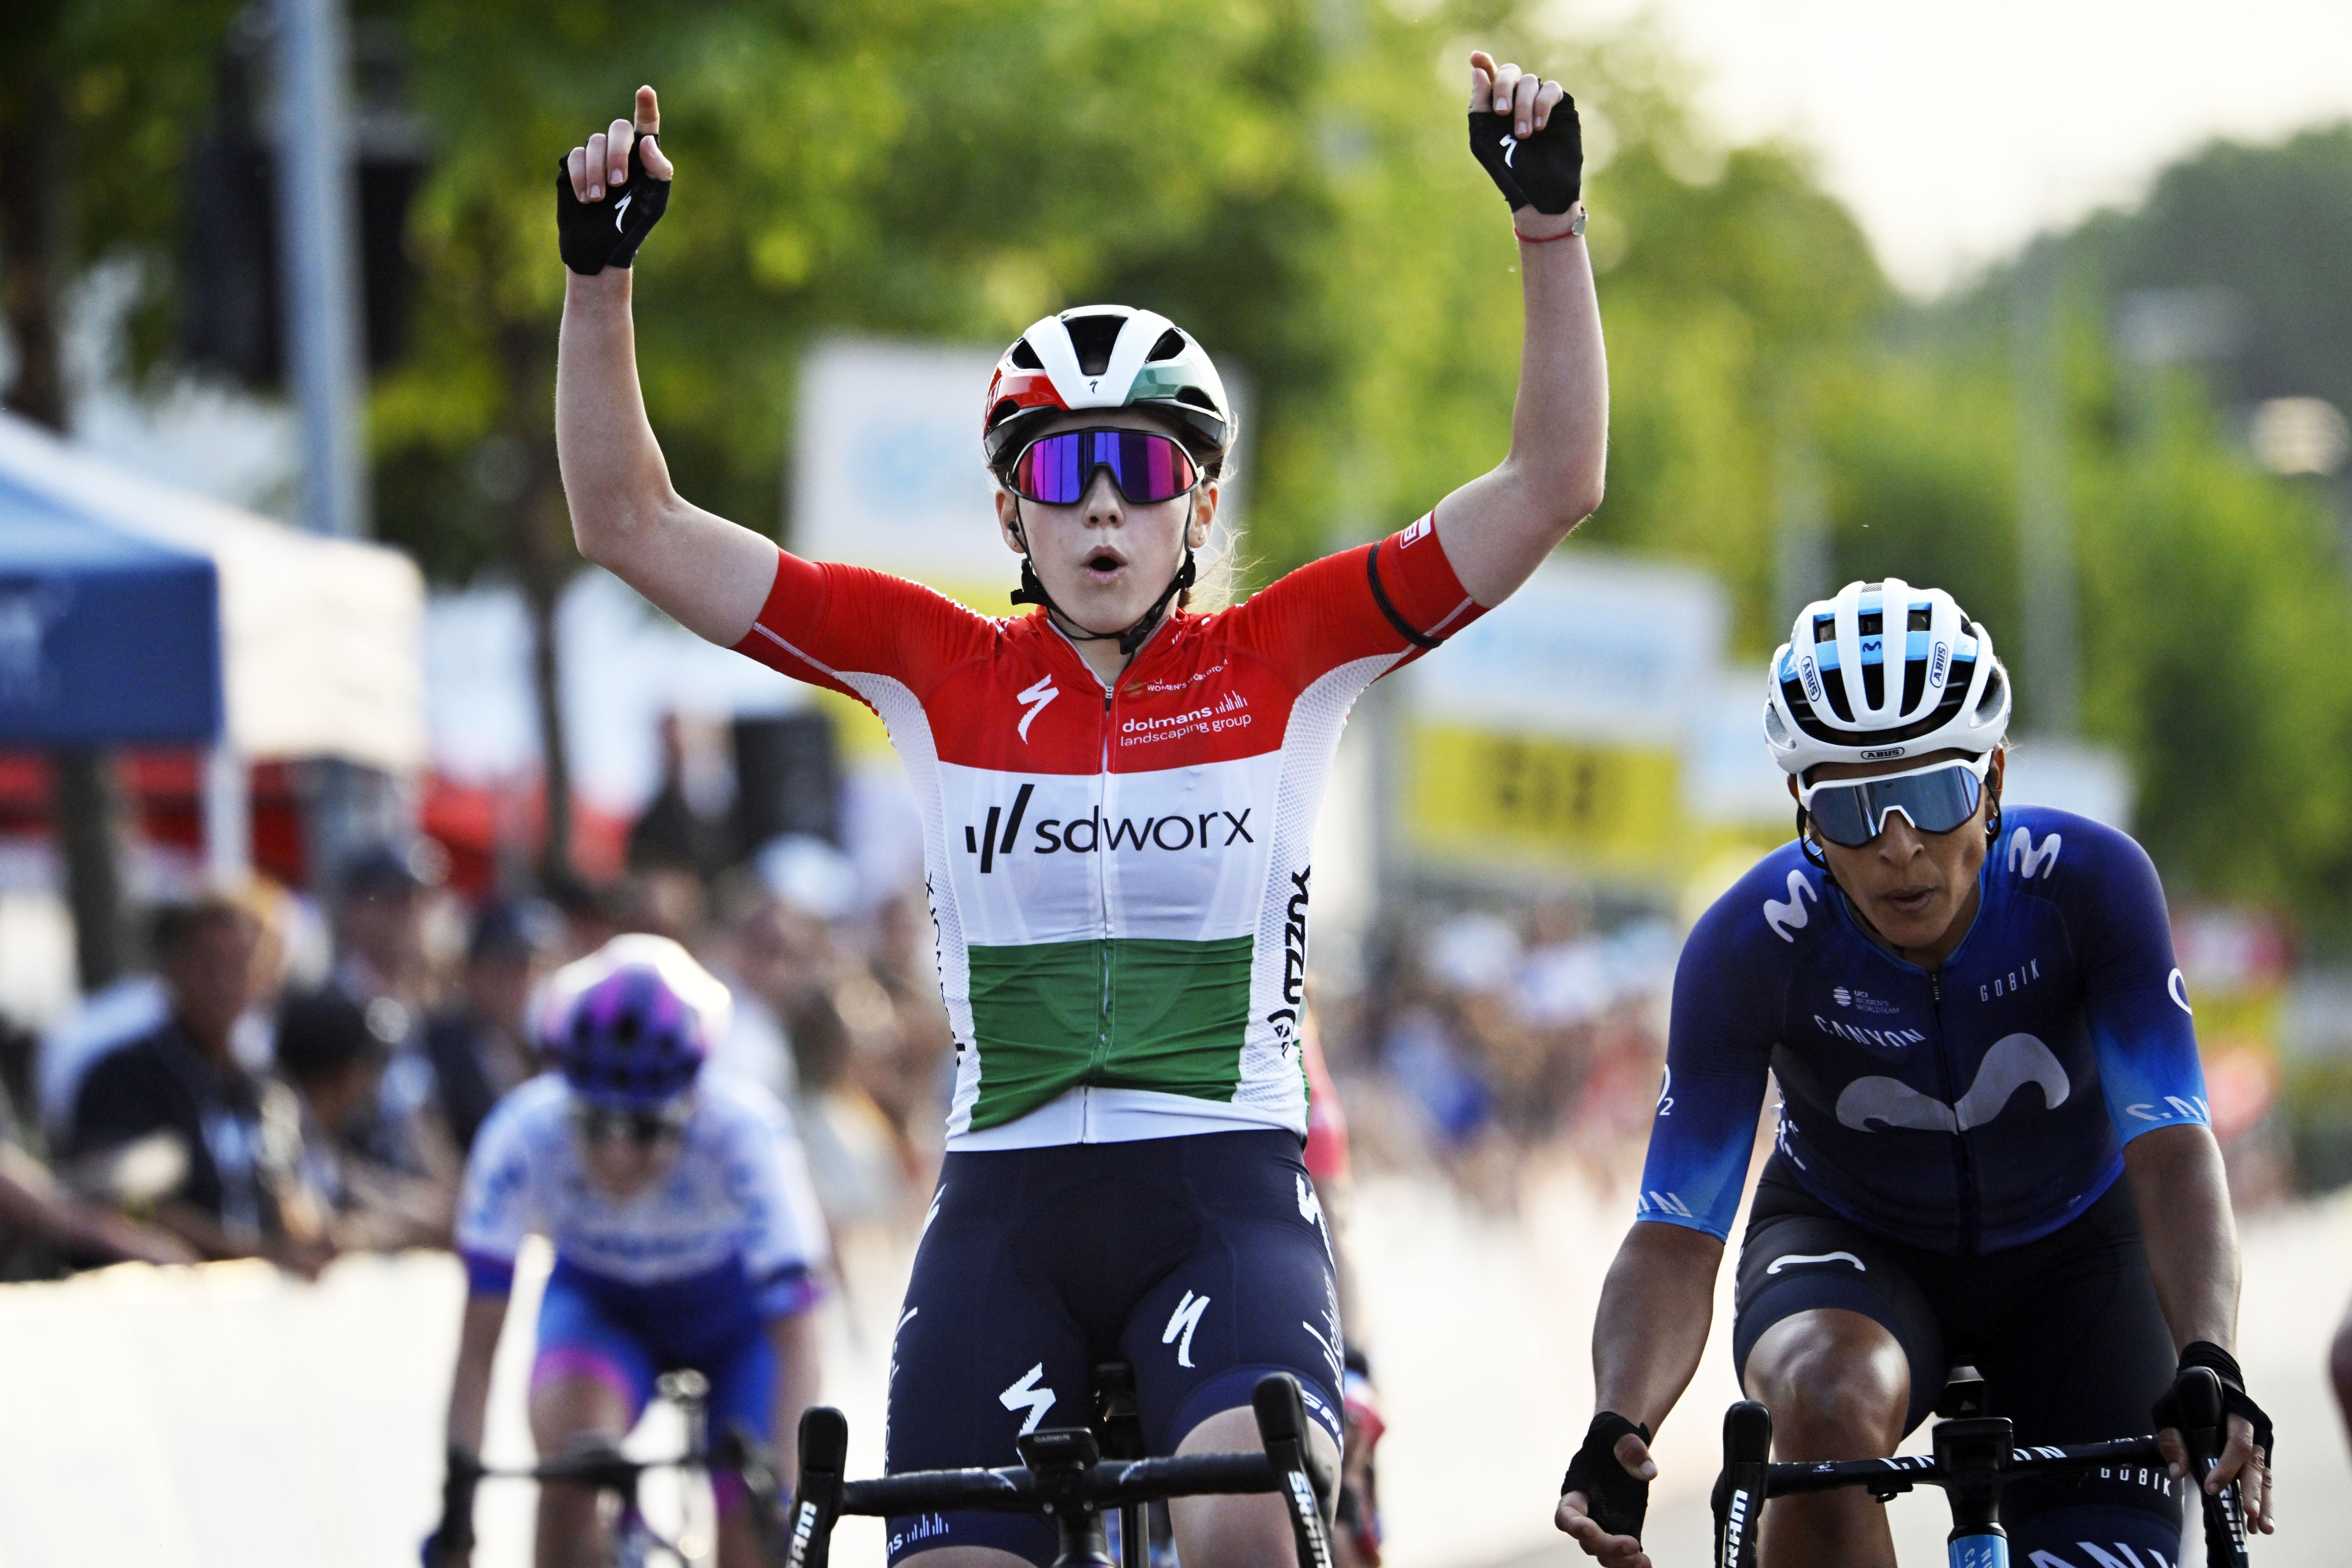 Elképesztő magyar sportsiker: Vas Kata Blanka szakaszt nyert a Giro d’Italián